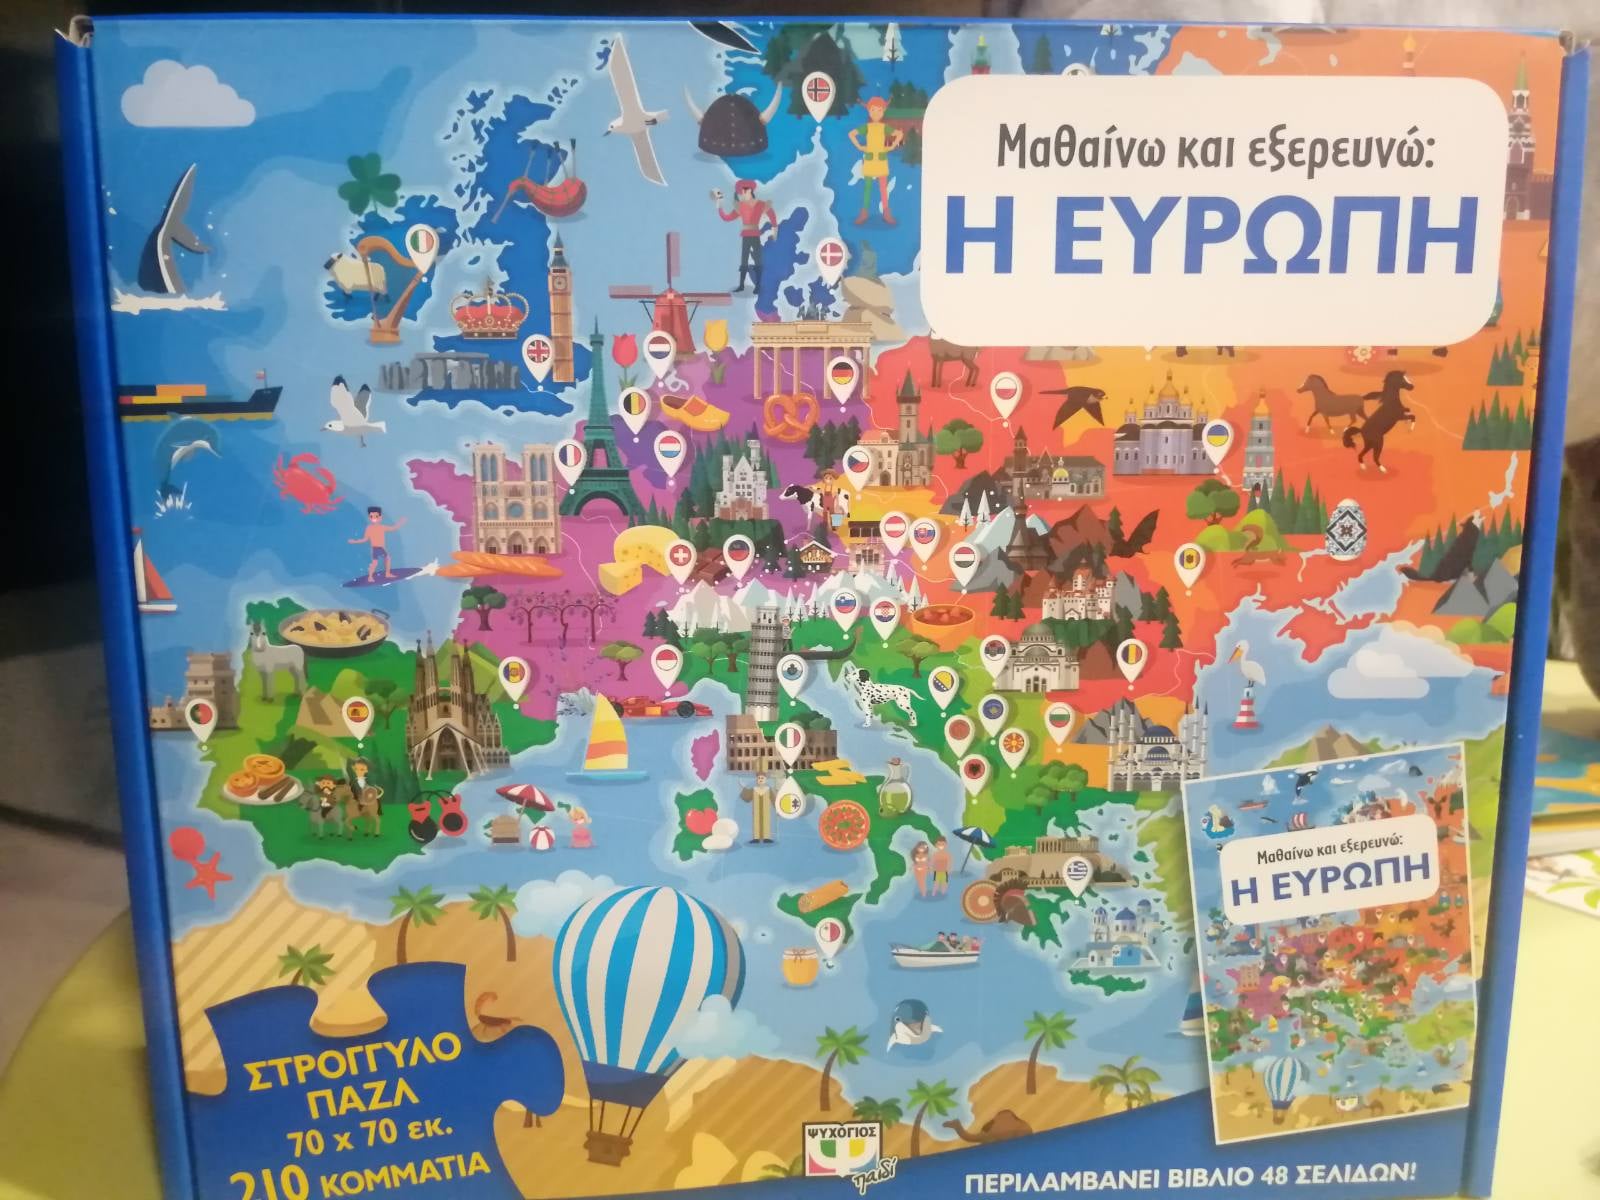 Σάλος από λάθος για την Κύπρο από τις εκδόσεις Ψυχογιός: - «Το βόρειο τμήμα ανήκει στην Τουρκία» - ΕΛΛΑΔΑ